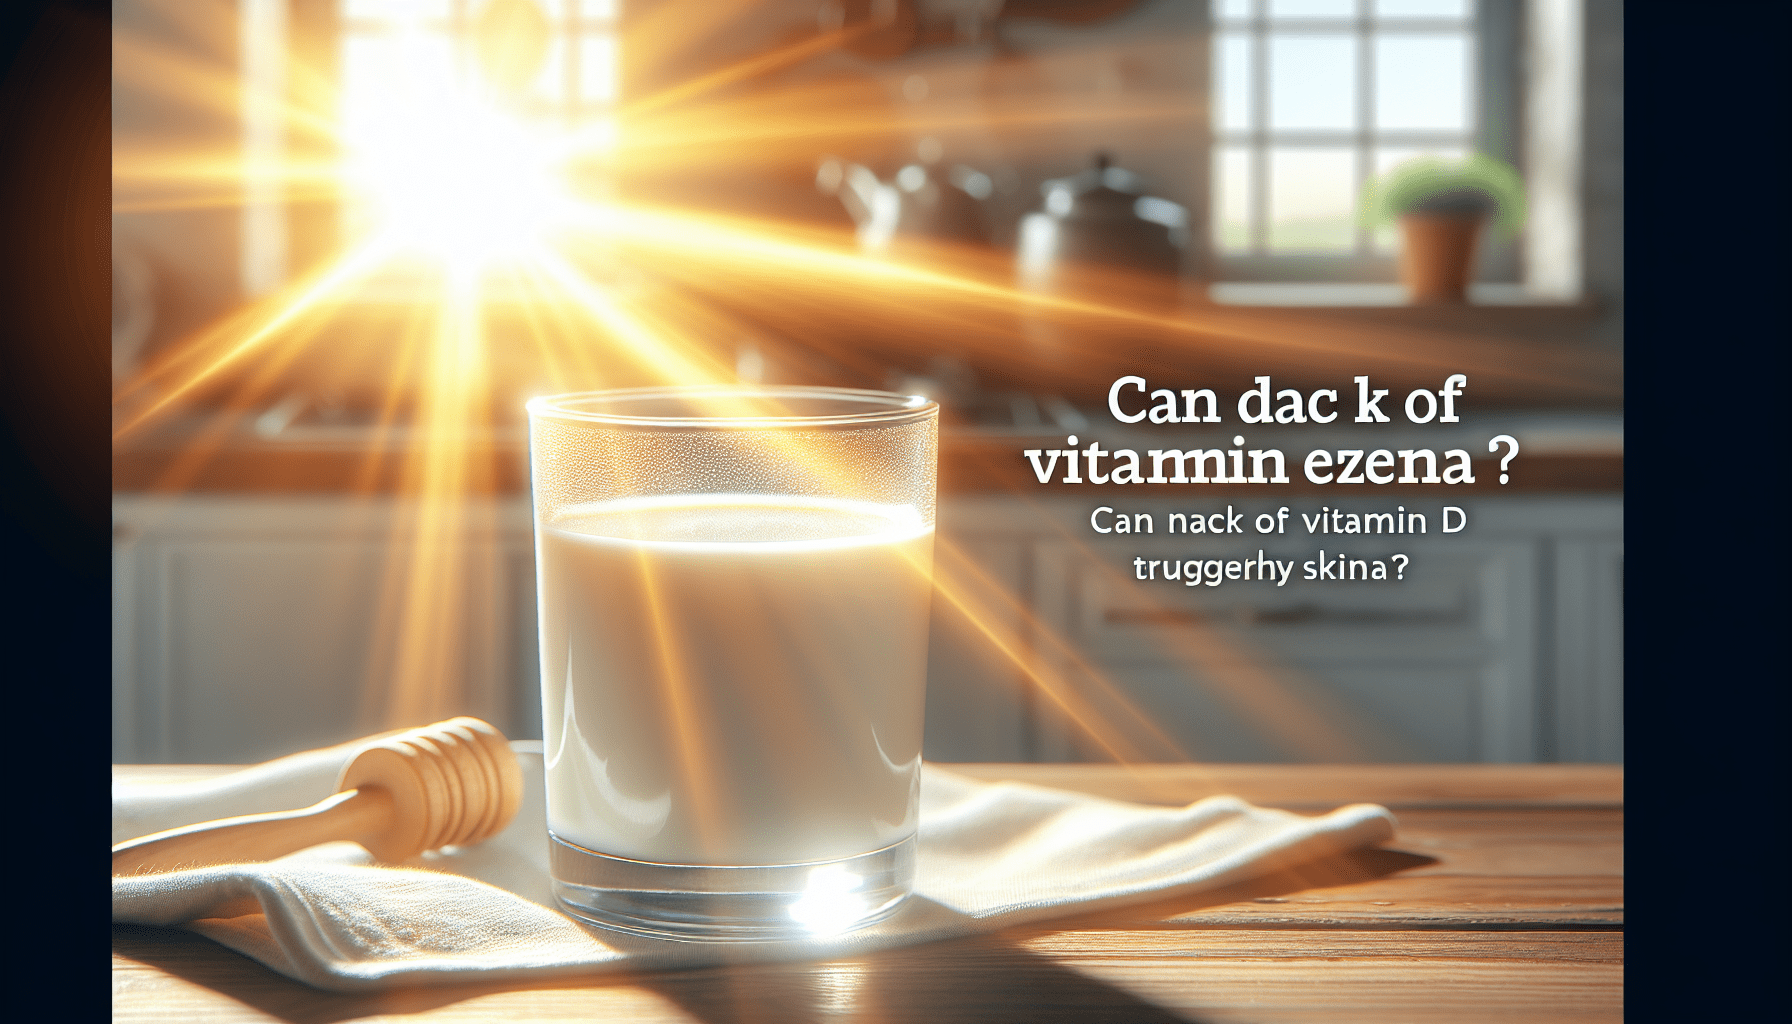 Can Lack Of Vitamin D Trigger Eczema?